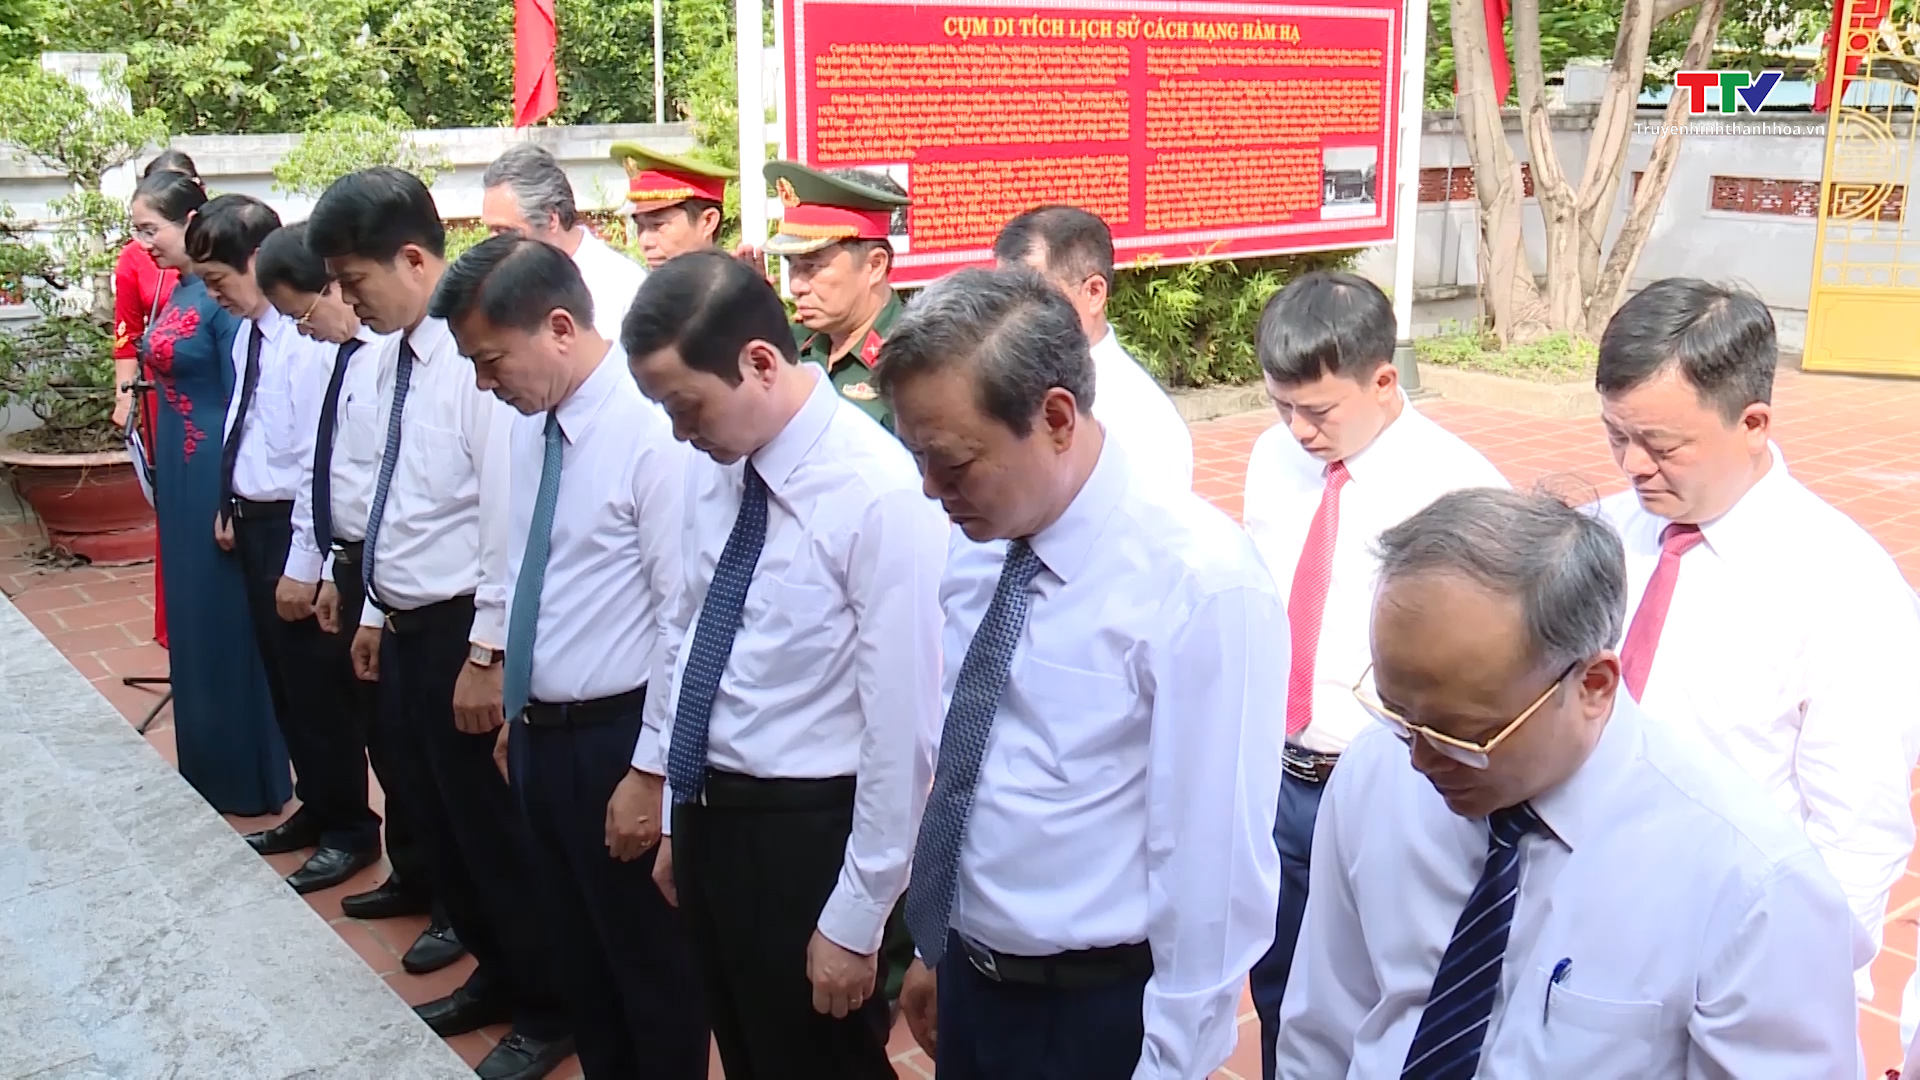 Đoàn đại biểu tỉnh dâng hoa, dâng hương tại Cụm Di tích lịch sử cách mạng Hàm Hạ - Ảnh 2.